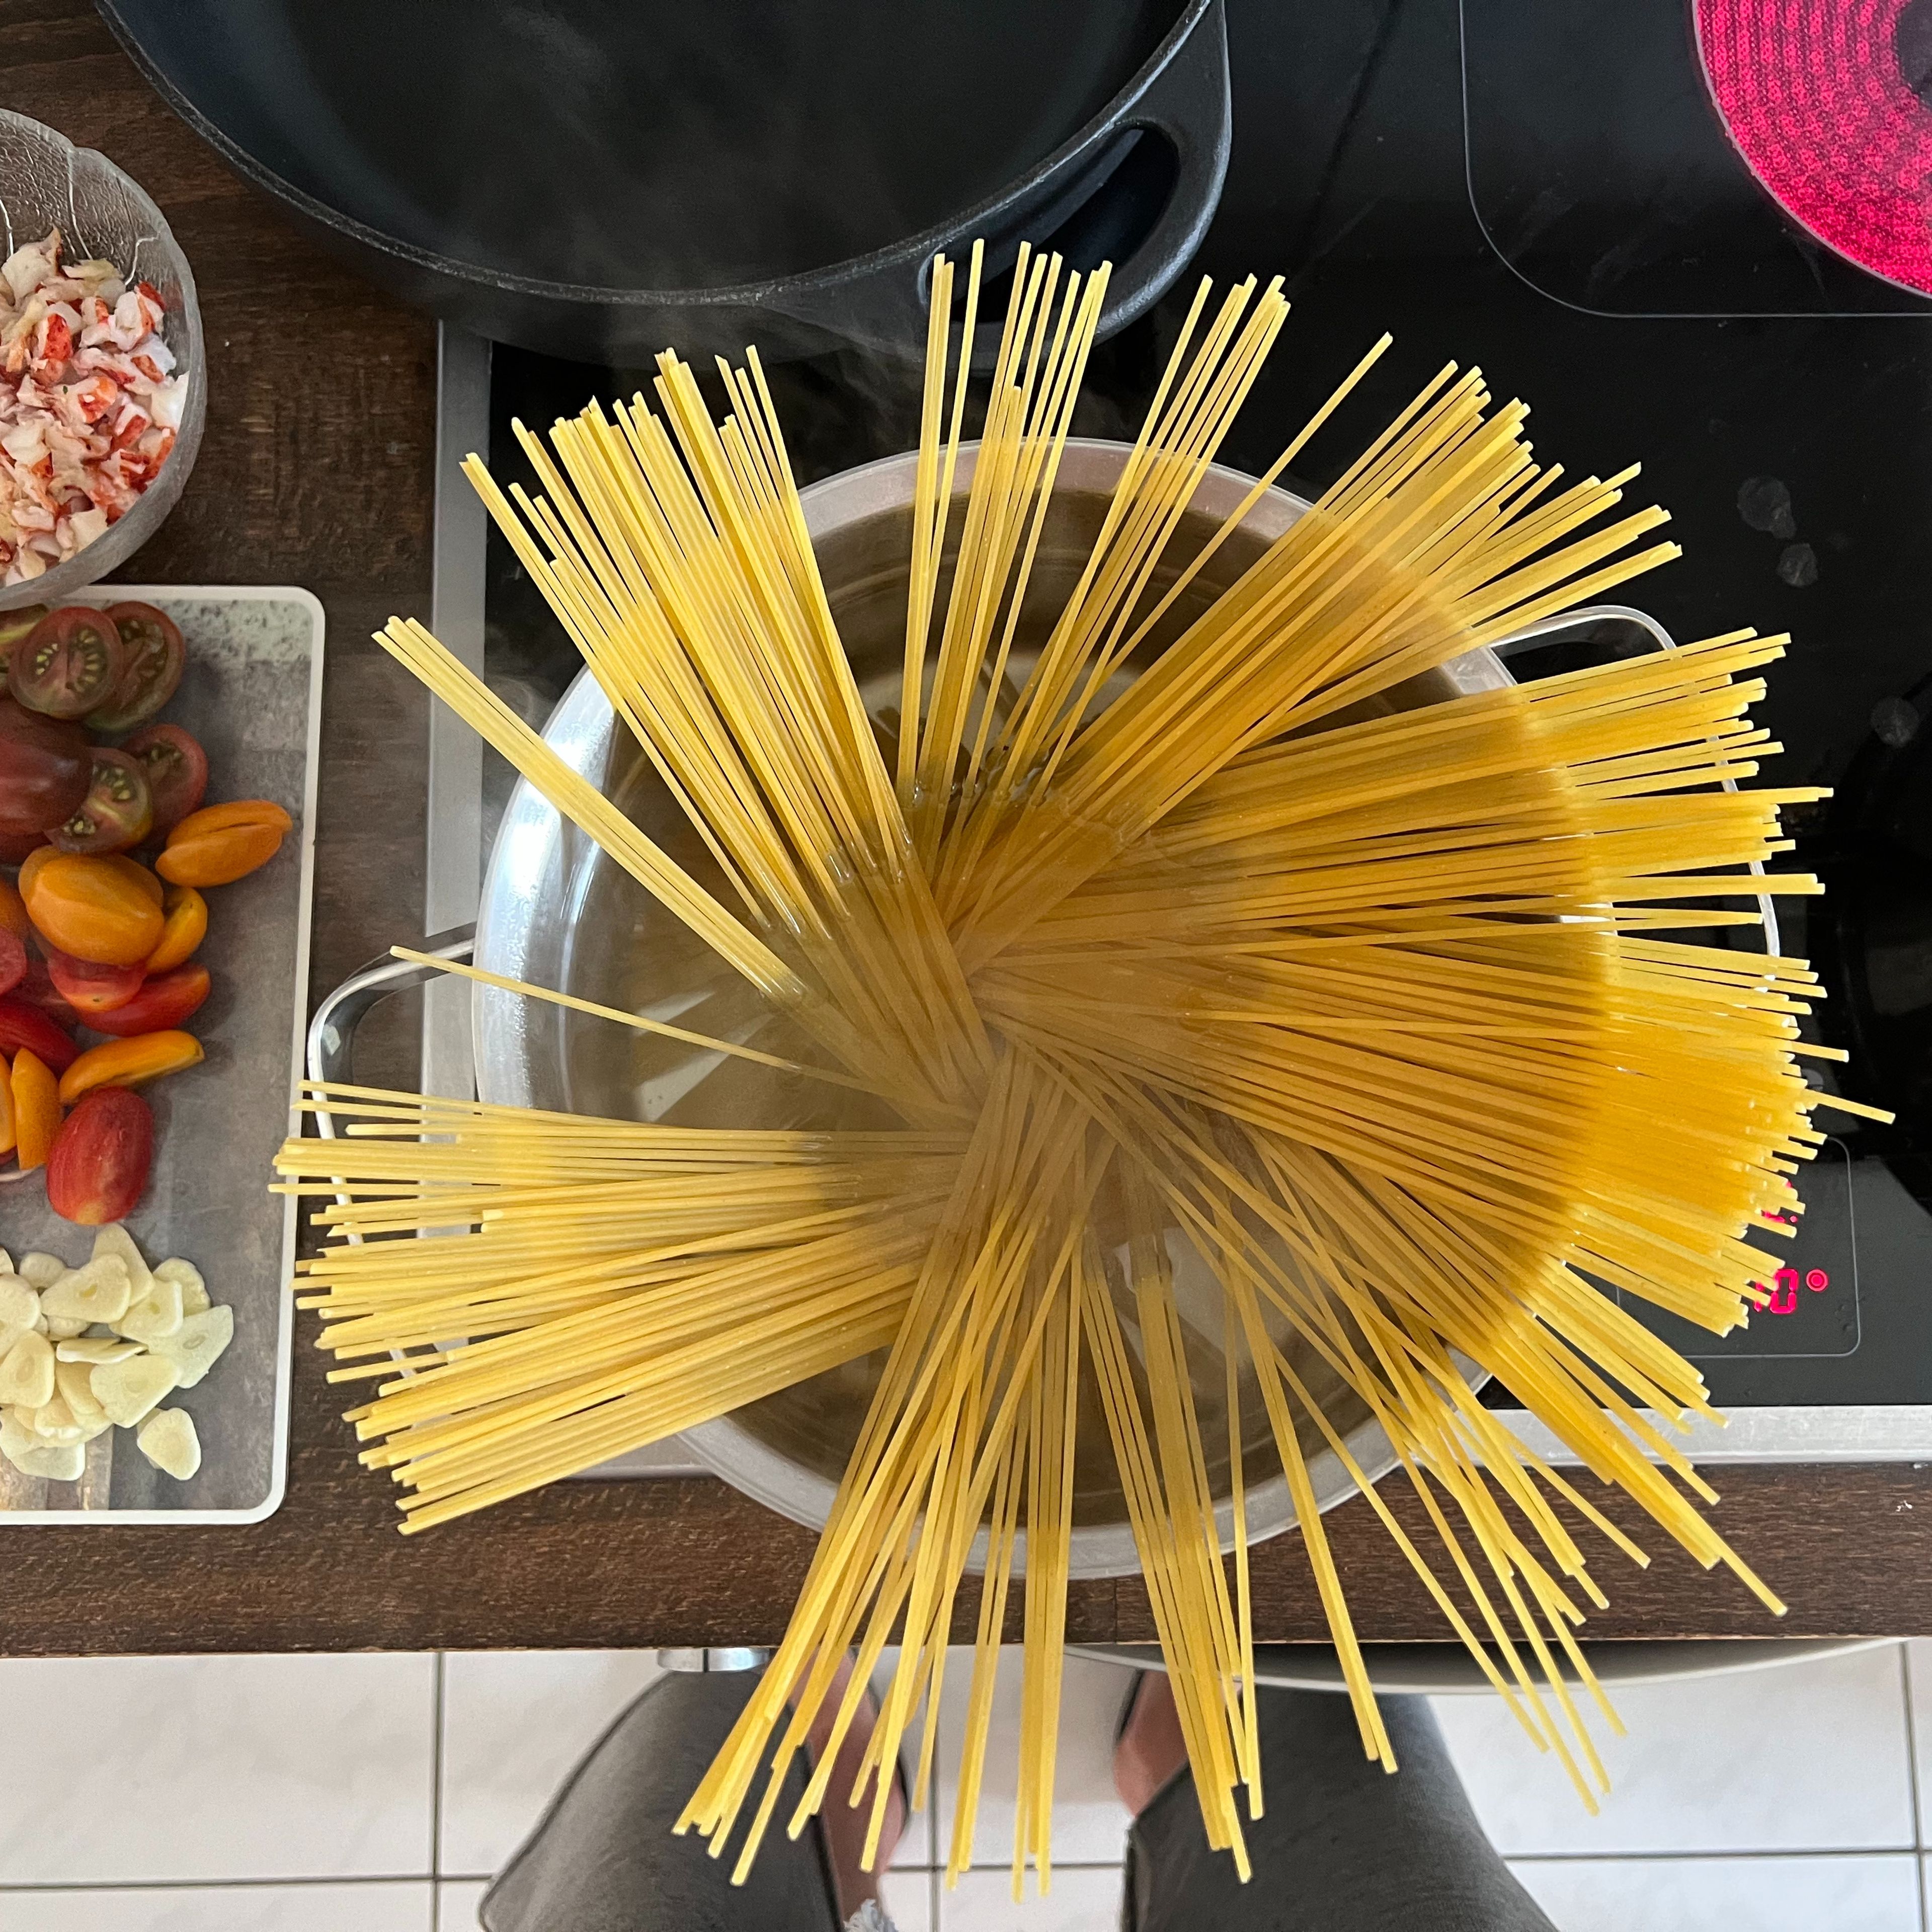 ZUBEREITUNG PASTA                           In einem großen Kochtopf reichlich Wasser zum Kochen bringen. Salz hinzufügen und Spaghetti hineingeben. Spaghetti al dente kochen und abgießen.